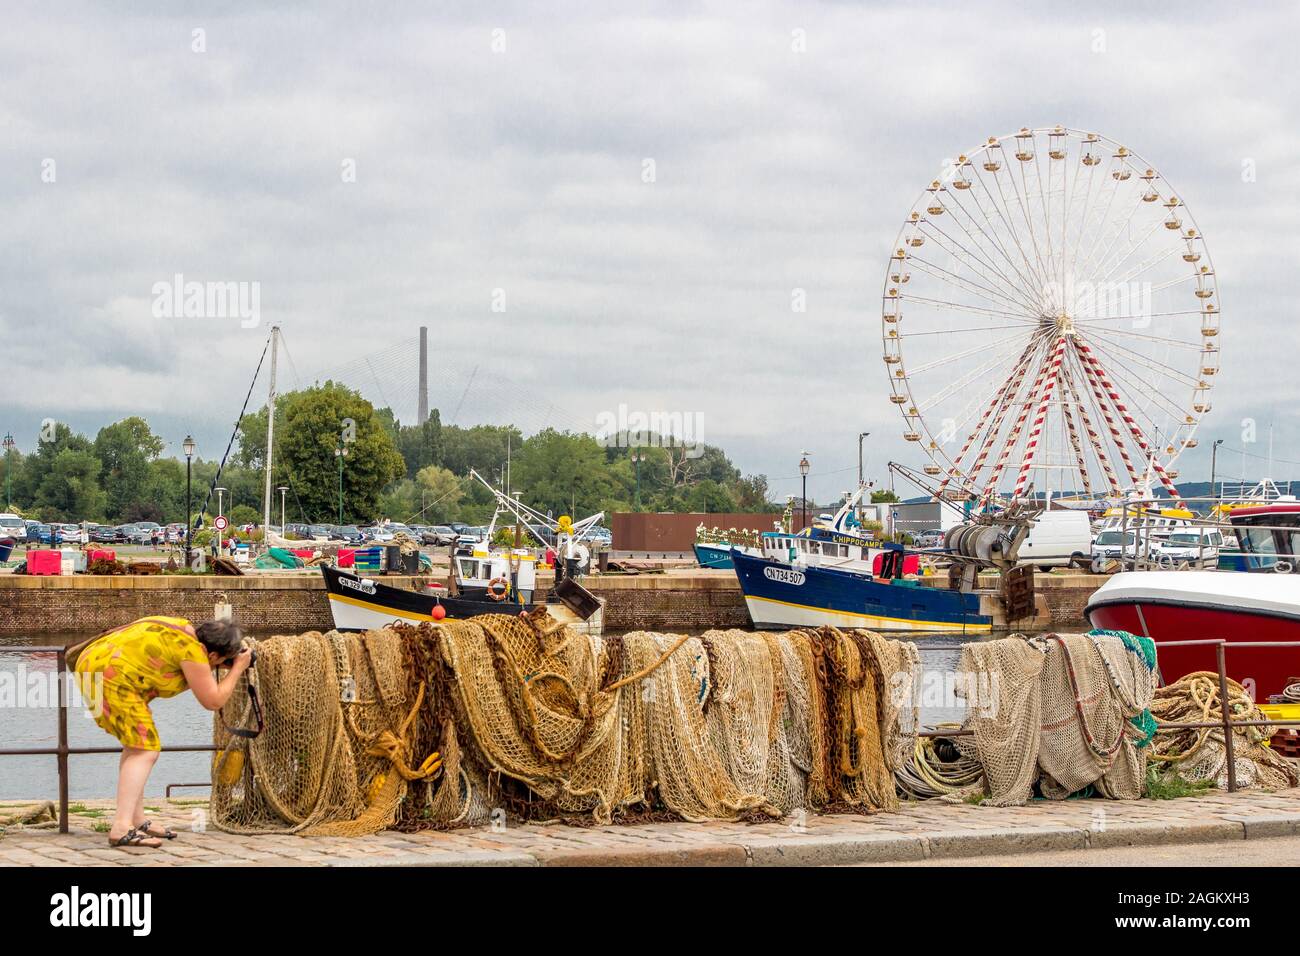 HONFLEUR, FRANCE - Aug 15, 2018: Femme photographiant des filets de pêche au port de Honfleur, avec en arrière-plan des bateaux de pêche, une grande-r Stock Photo